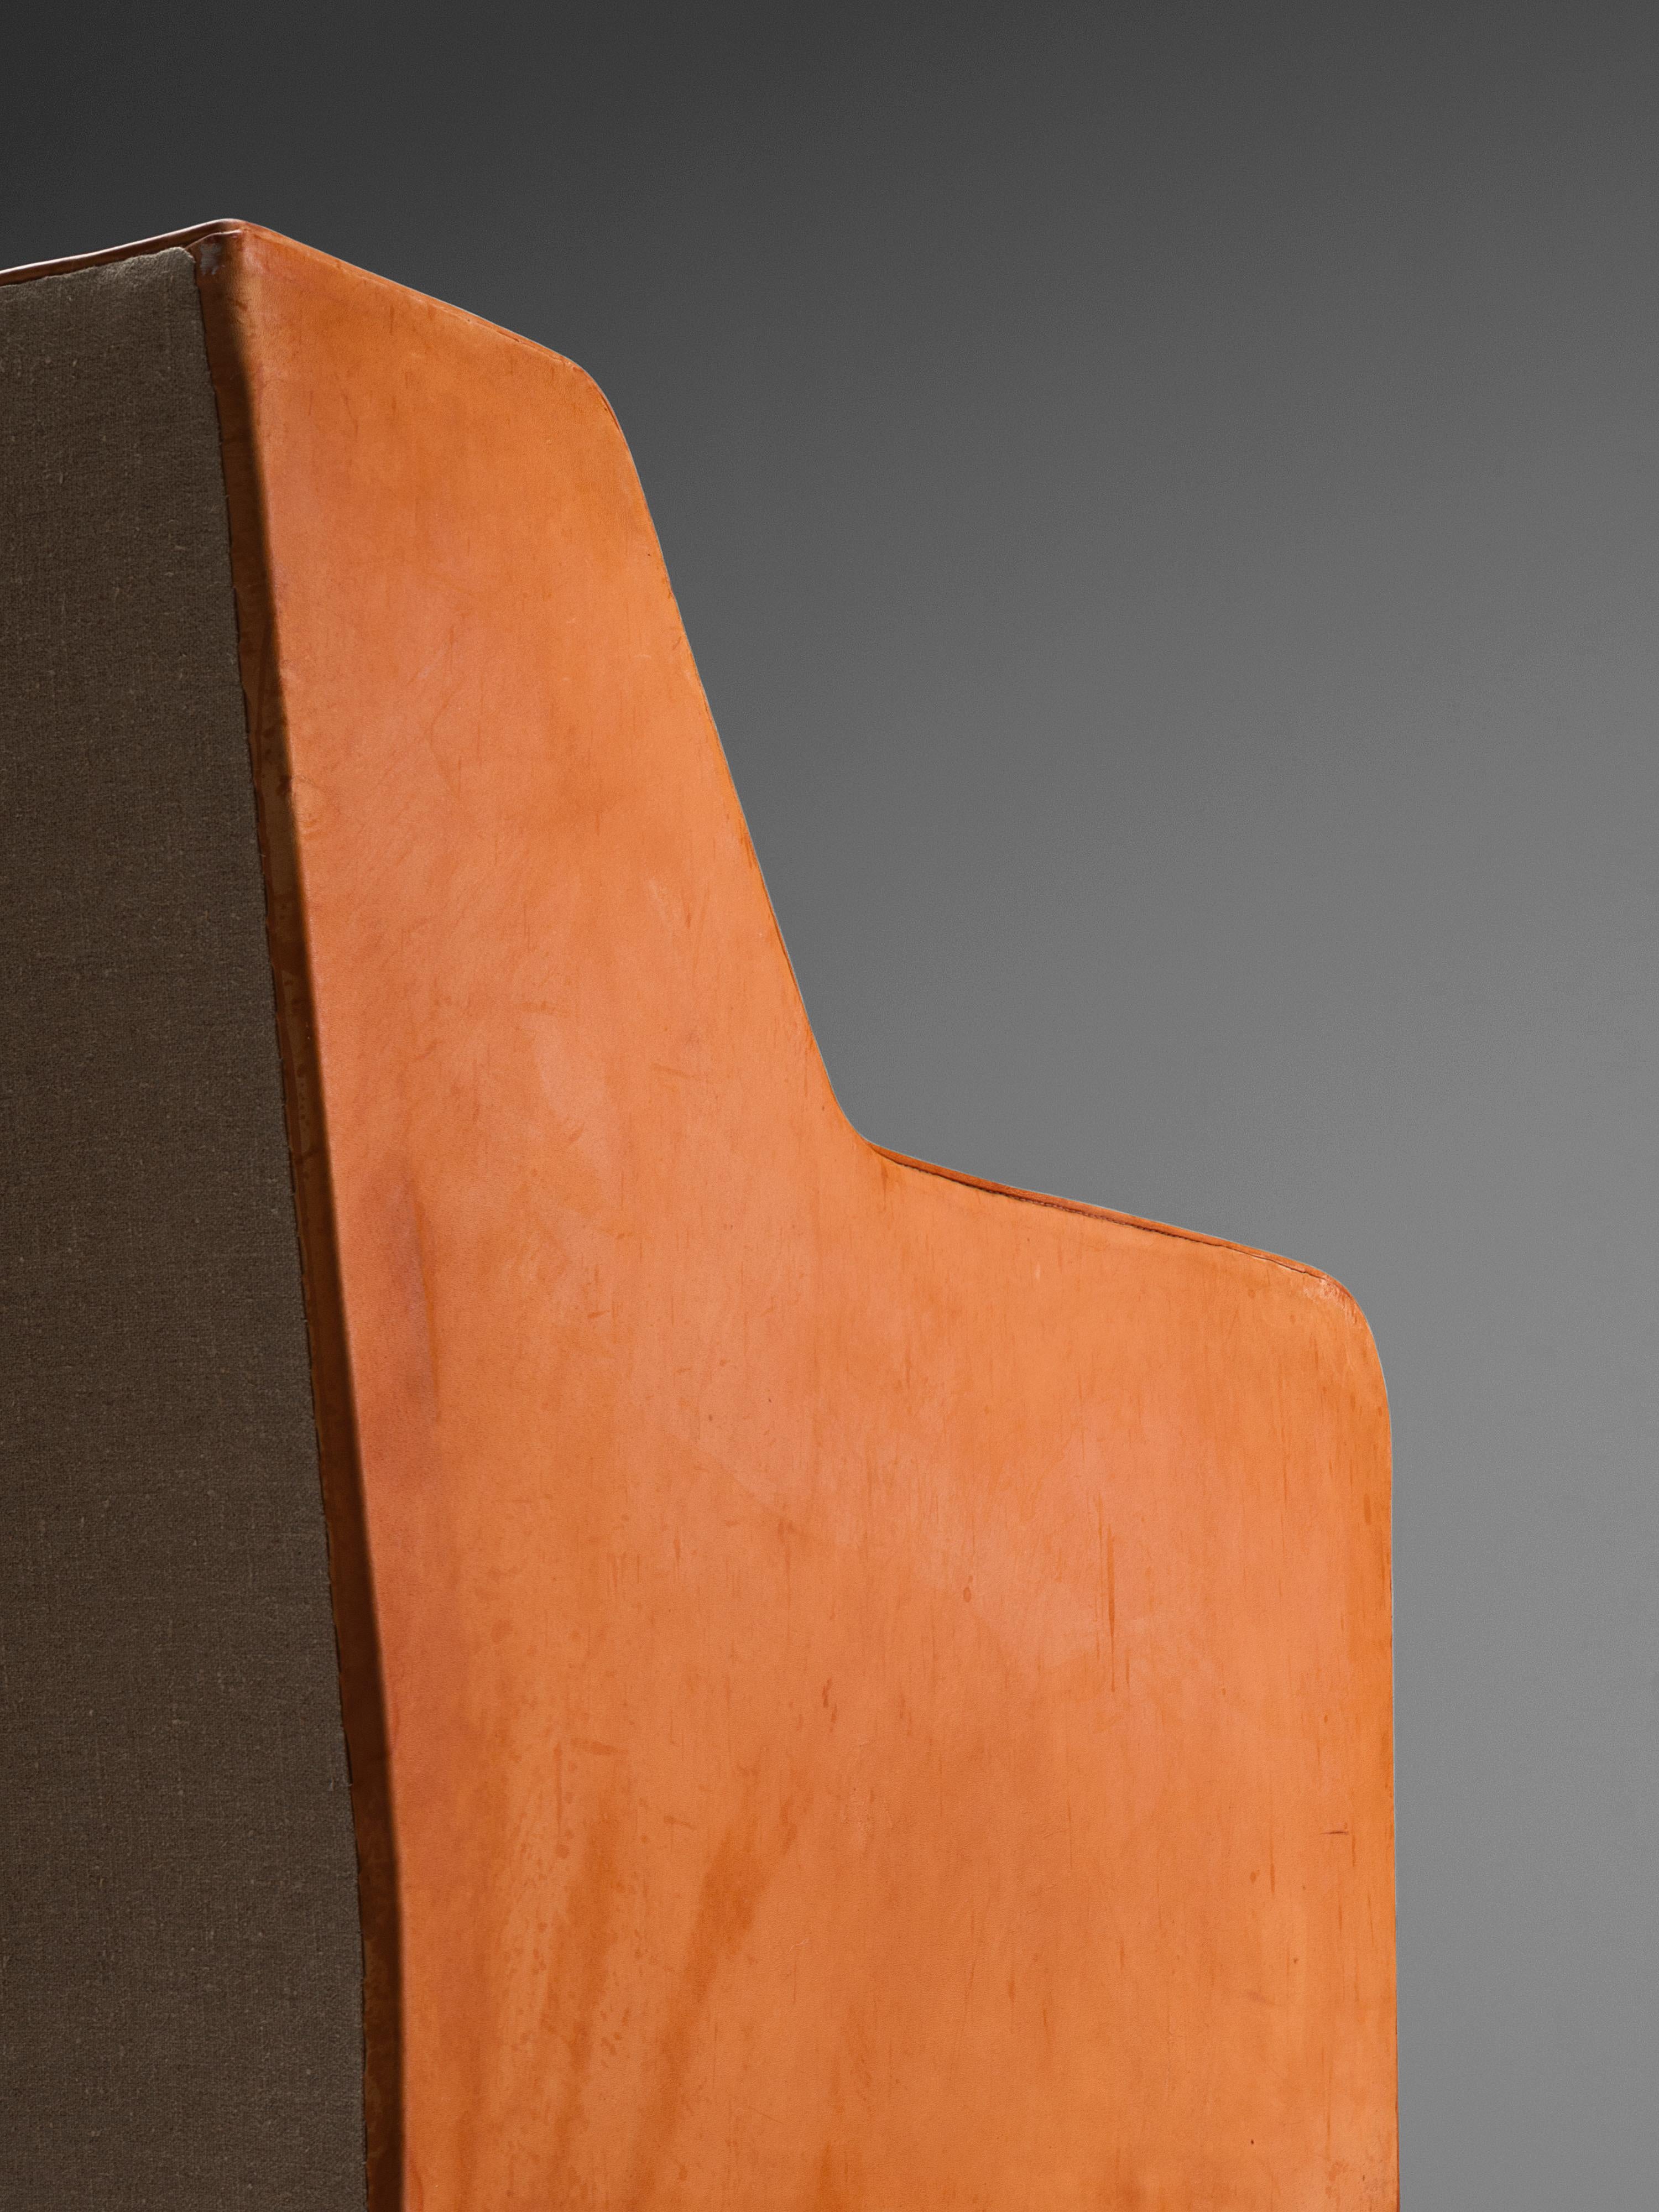 Kaare Klint for Rud Rasmussen Sofa 4118 in Original Cognac Leather 2